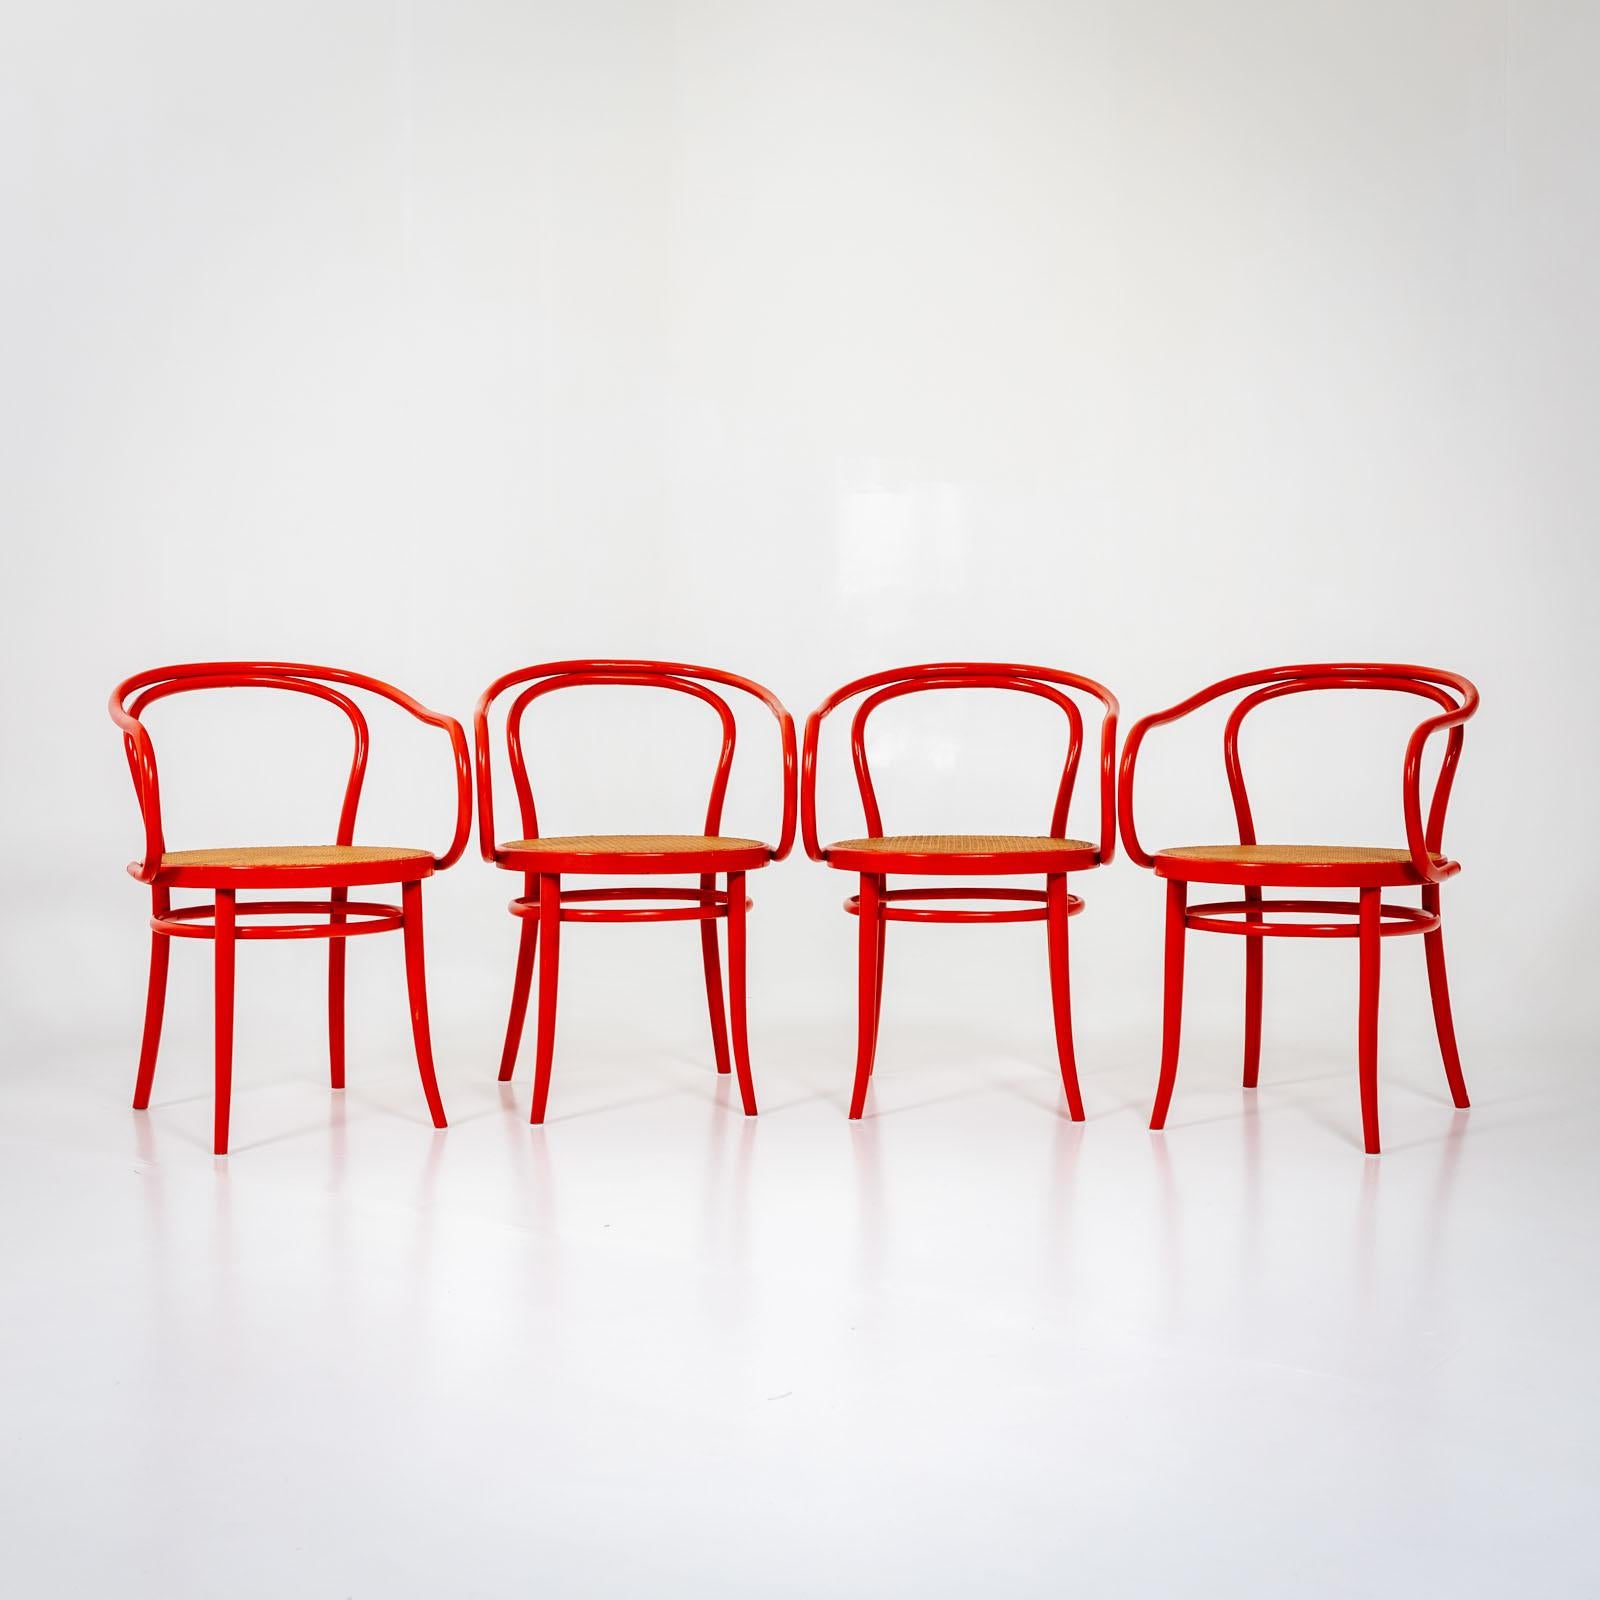 Ensemble de quatre chaises en bois courbé rouge de Drevounia, anciennement Tchécoslovaquie. Les chaises sont conçues dans le style de Thonet. Les sièges sont recouverts de vannerie viennoise. Label sur la face inférieure : 